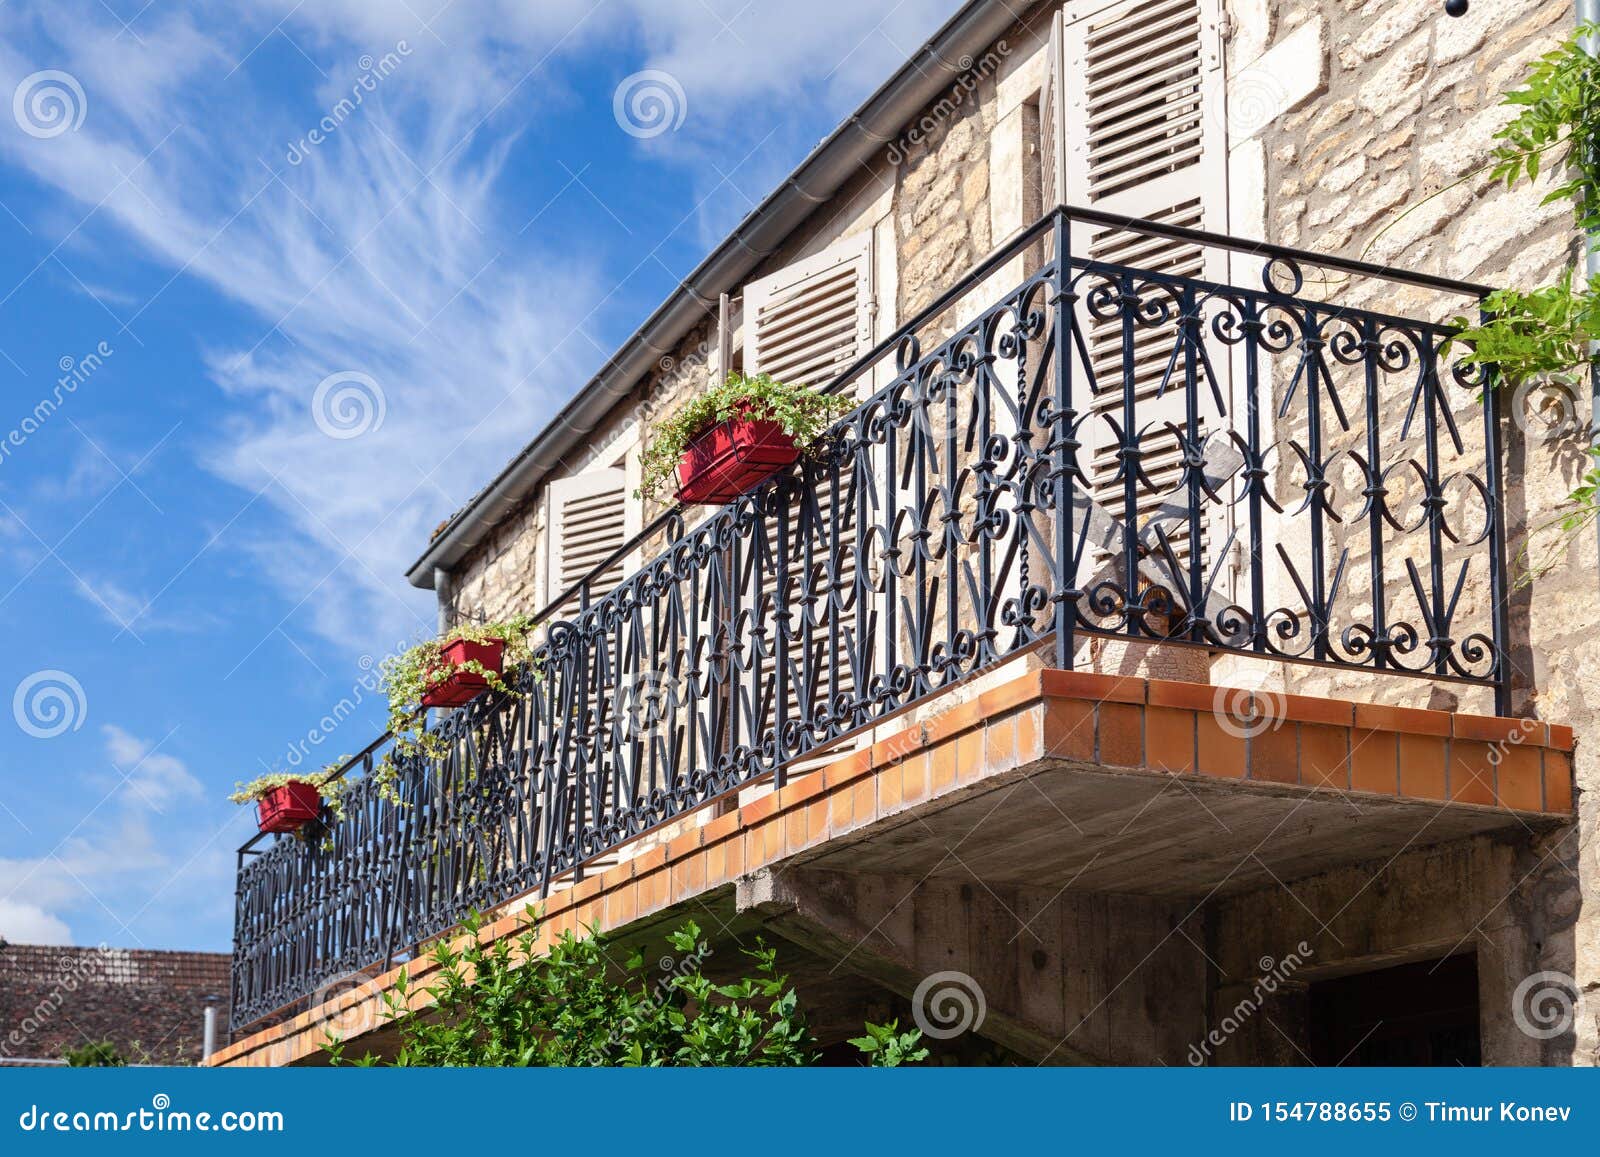 barandillas de los balcones de hierro forjado valla de pared de flores colgando de múltiples capas que cuelga sencilla y moderna plataforma maceta de flores carne lollo verde puesto de flores-Bronce 